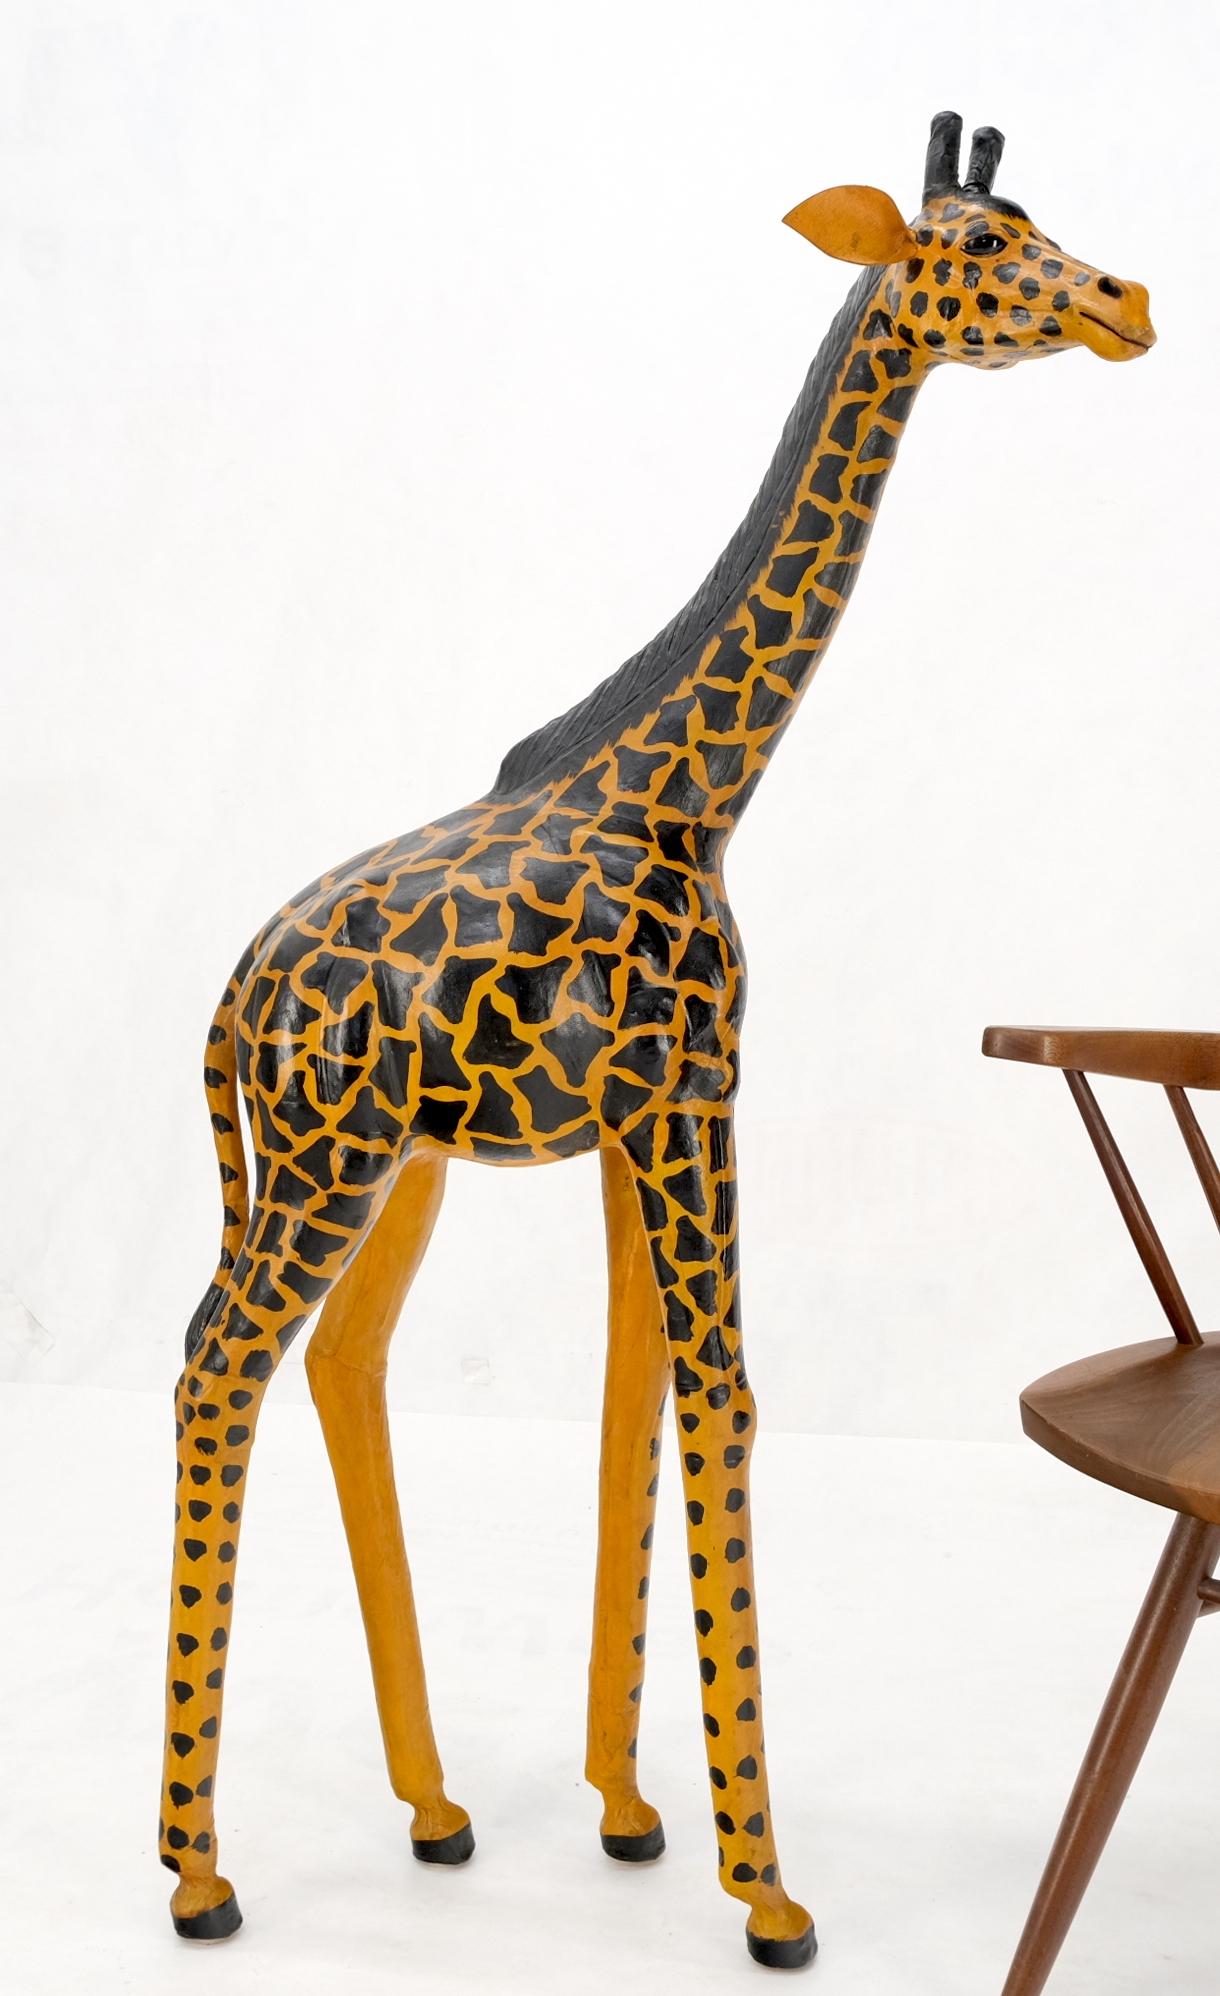 Abercrombie & Fitch Style Geprägte Lederskulptur einer Giraffe.